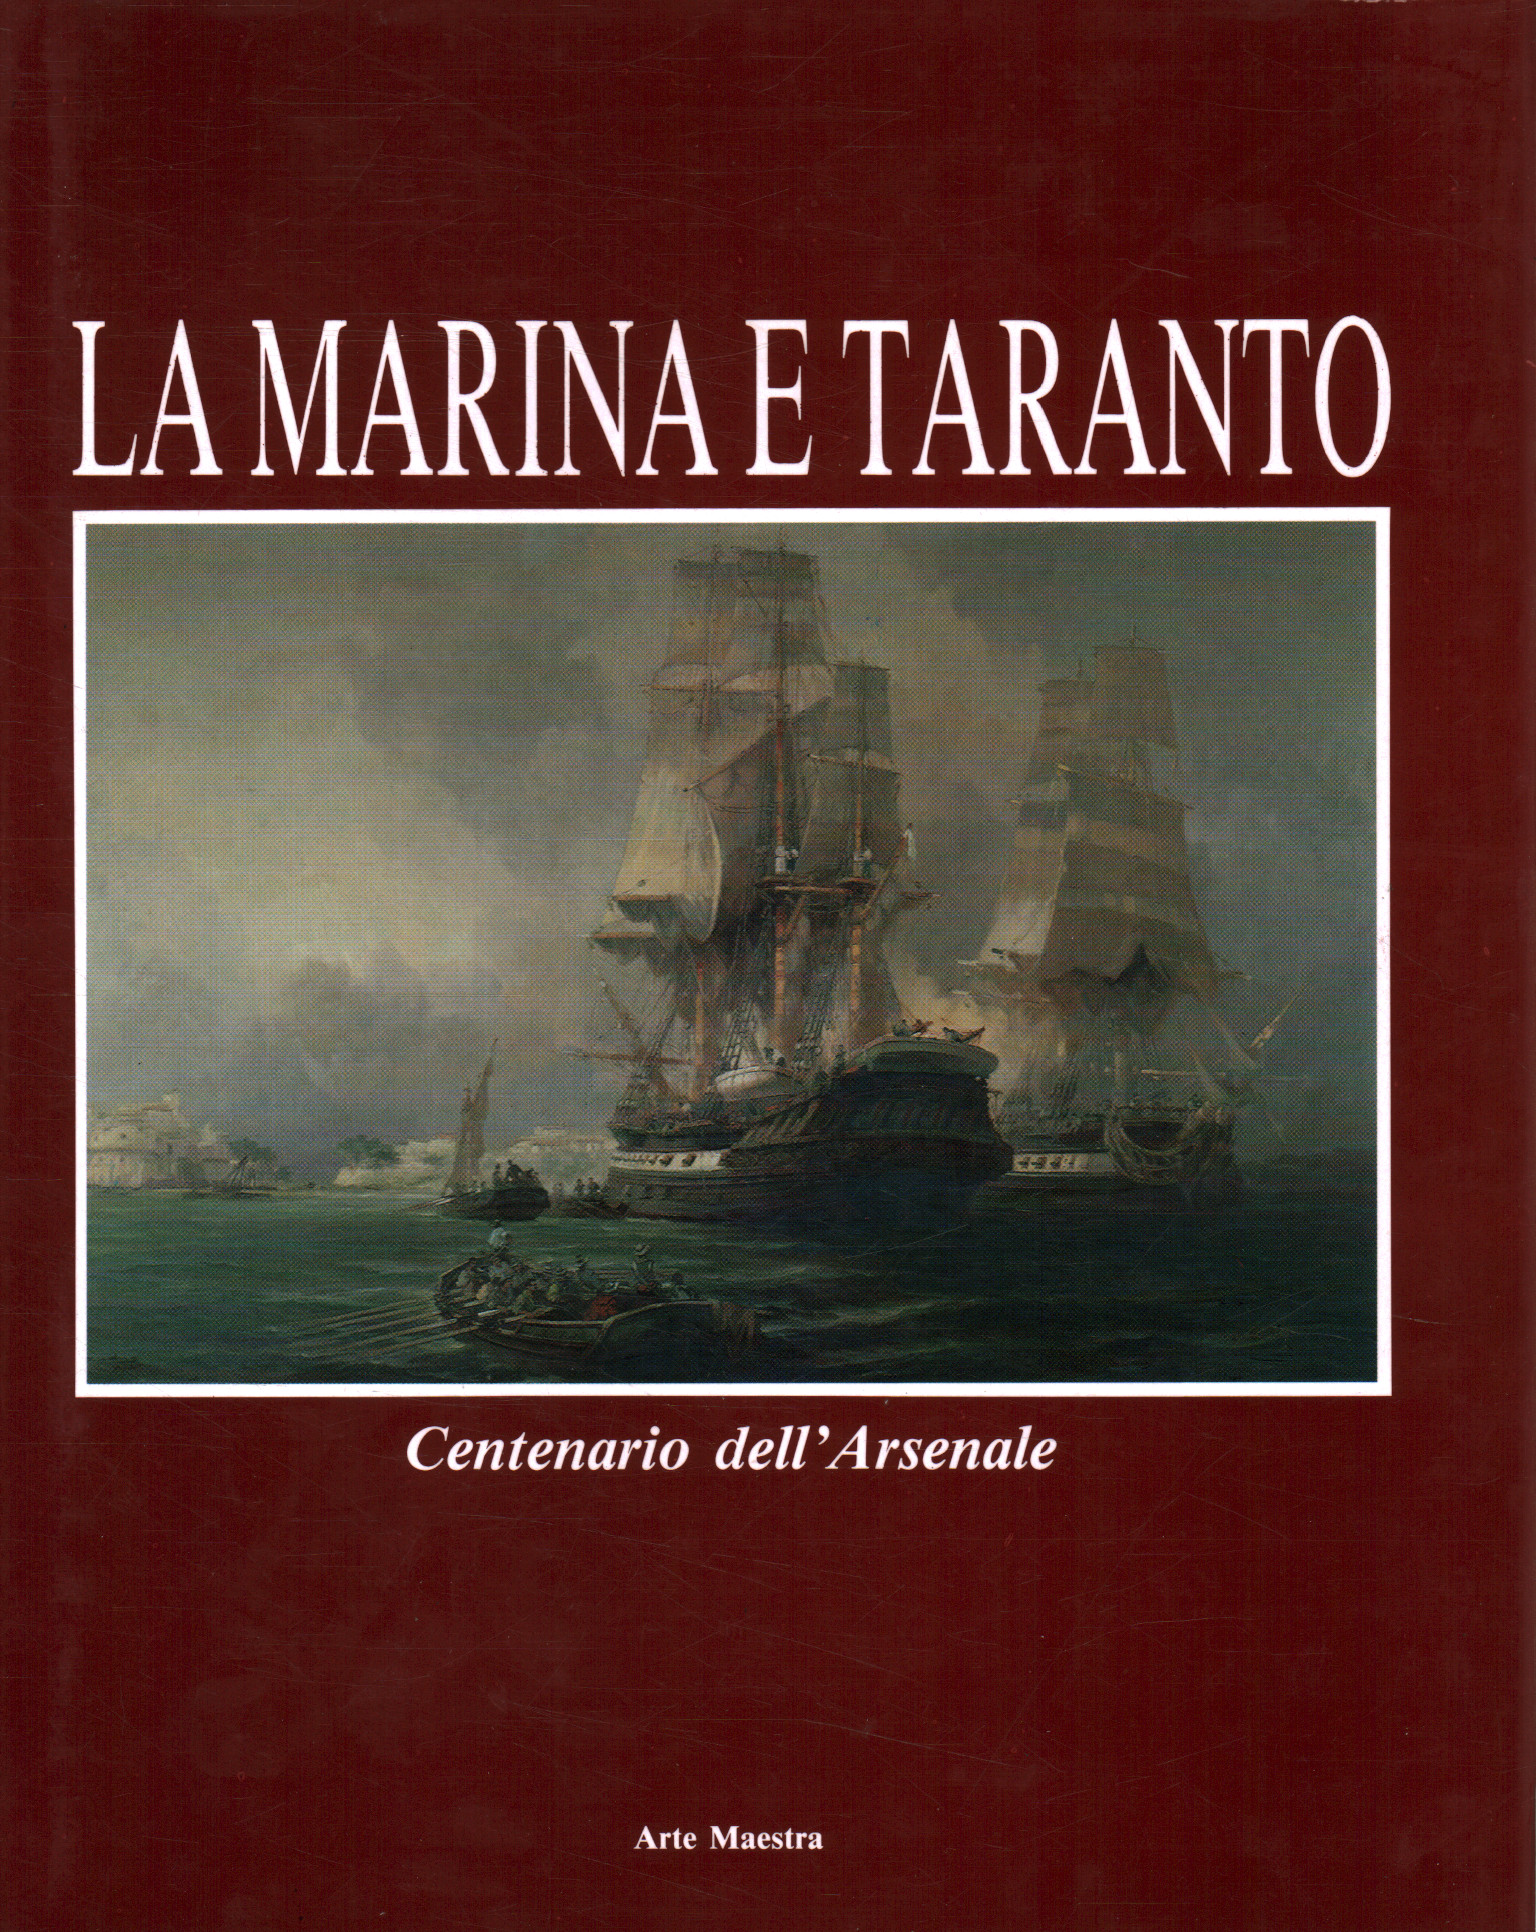 Die Marine und Taranto